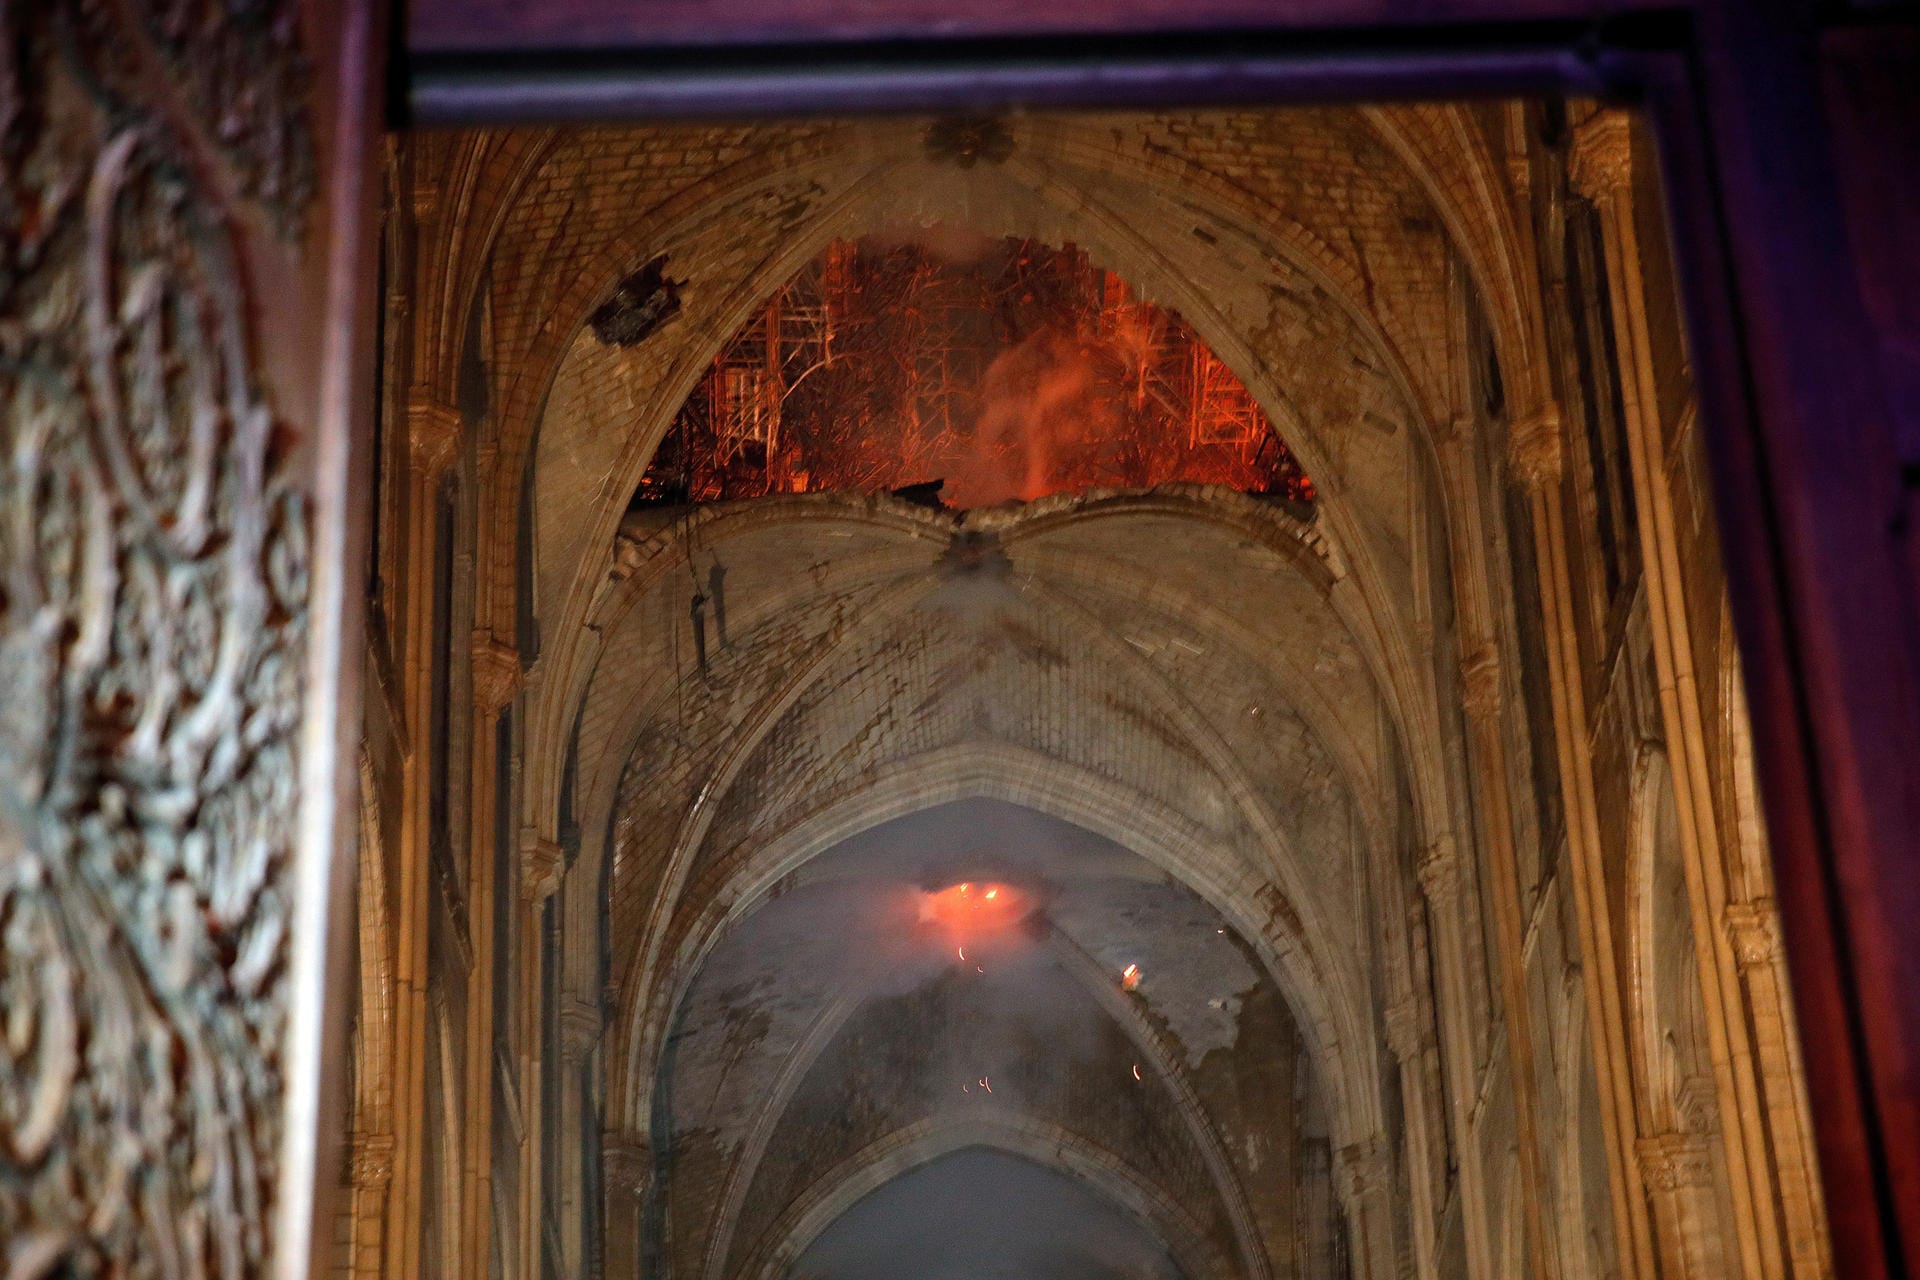 Erst in der Nacht konnten Feuerwehrleute in die Kirche – da brannten Teile noch stark. Dadurch wurde erkennbar, wie zerstört der Innenraum ist.